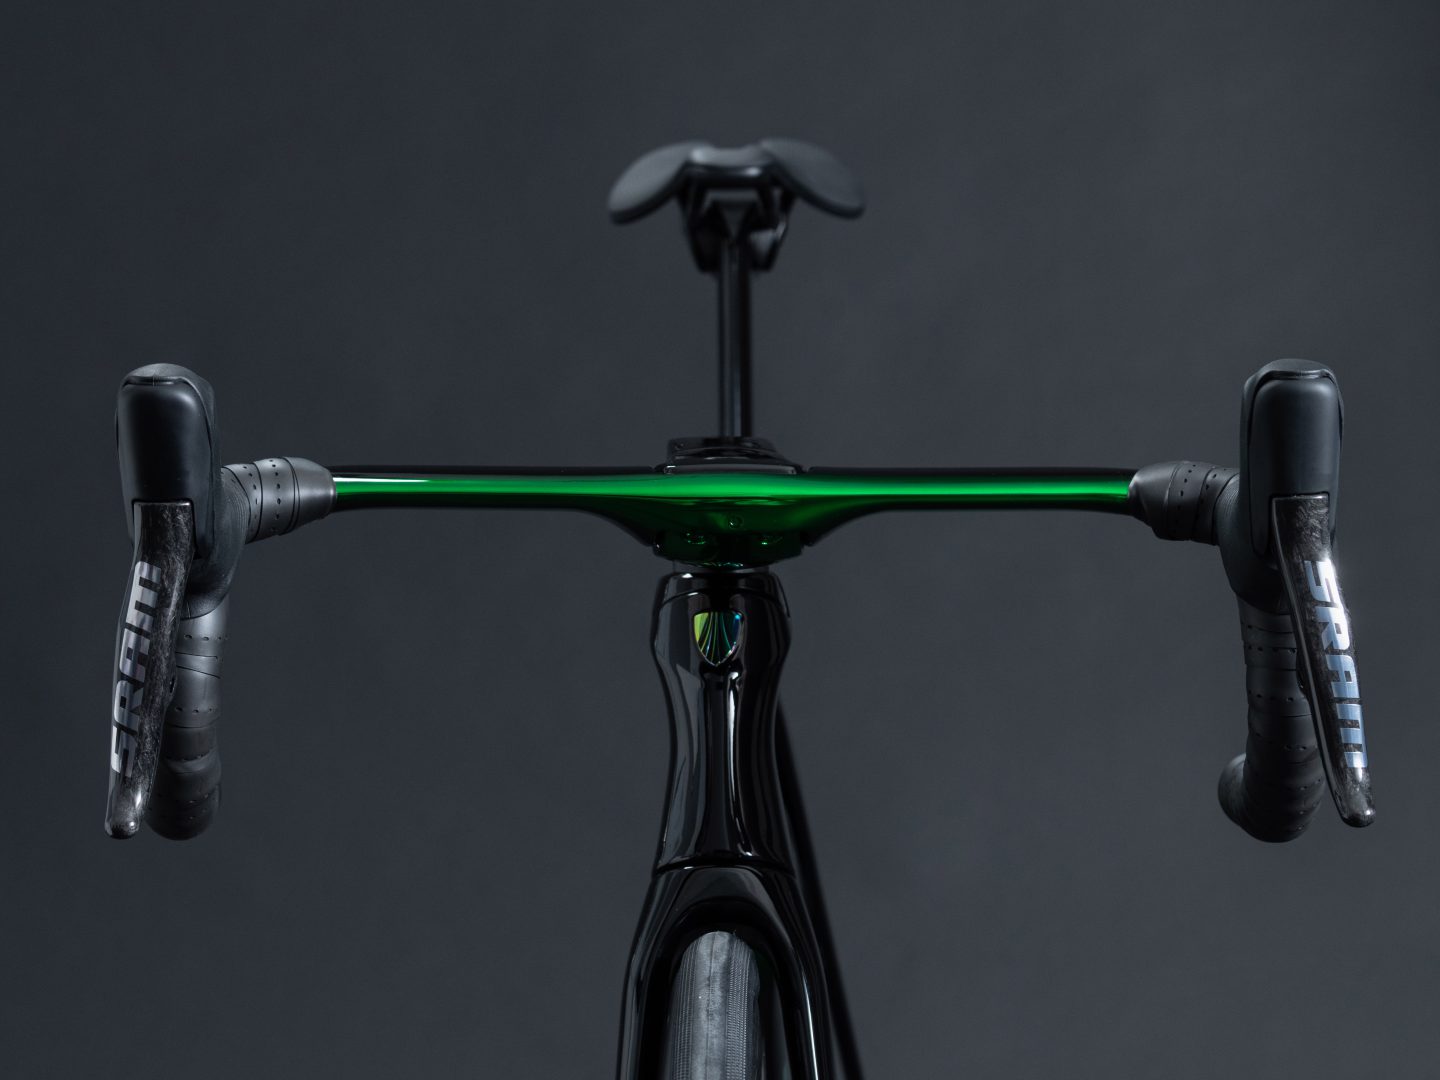 El color verde chroma del manillar va a juego con el resto de la bicicleta.